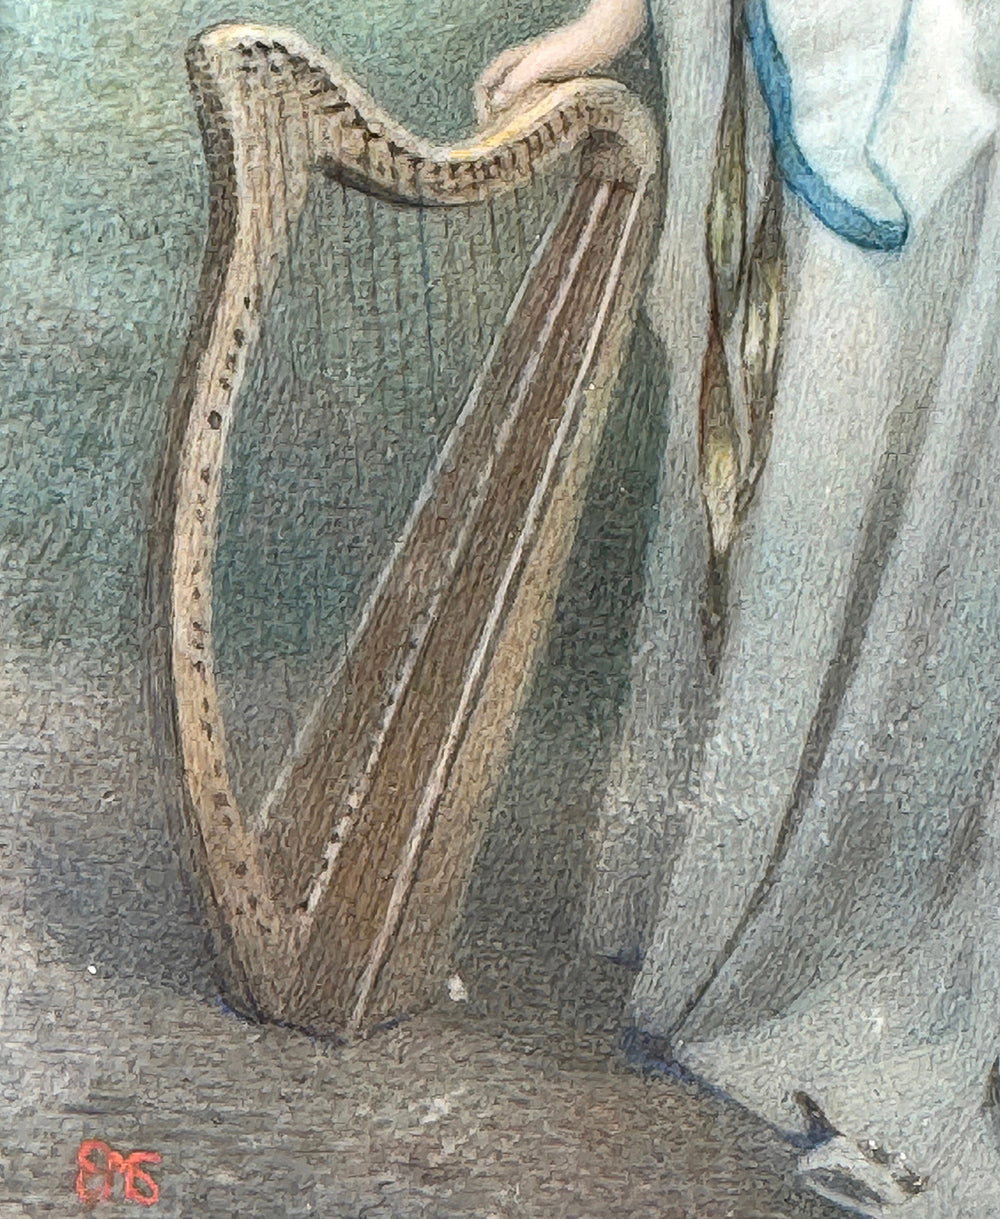 RARE Magnificent Full Portrait Miniature in Landscape with Harp, Fine French Dore Bronze Frame